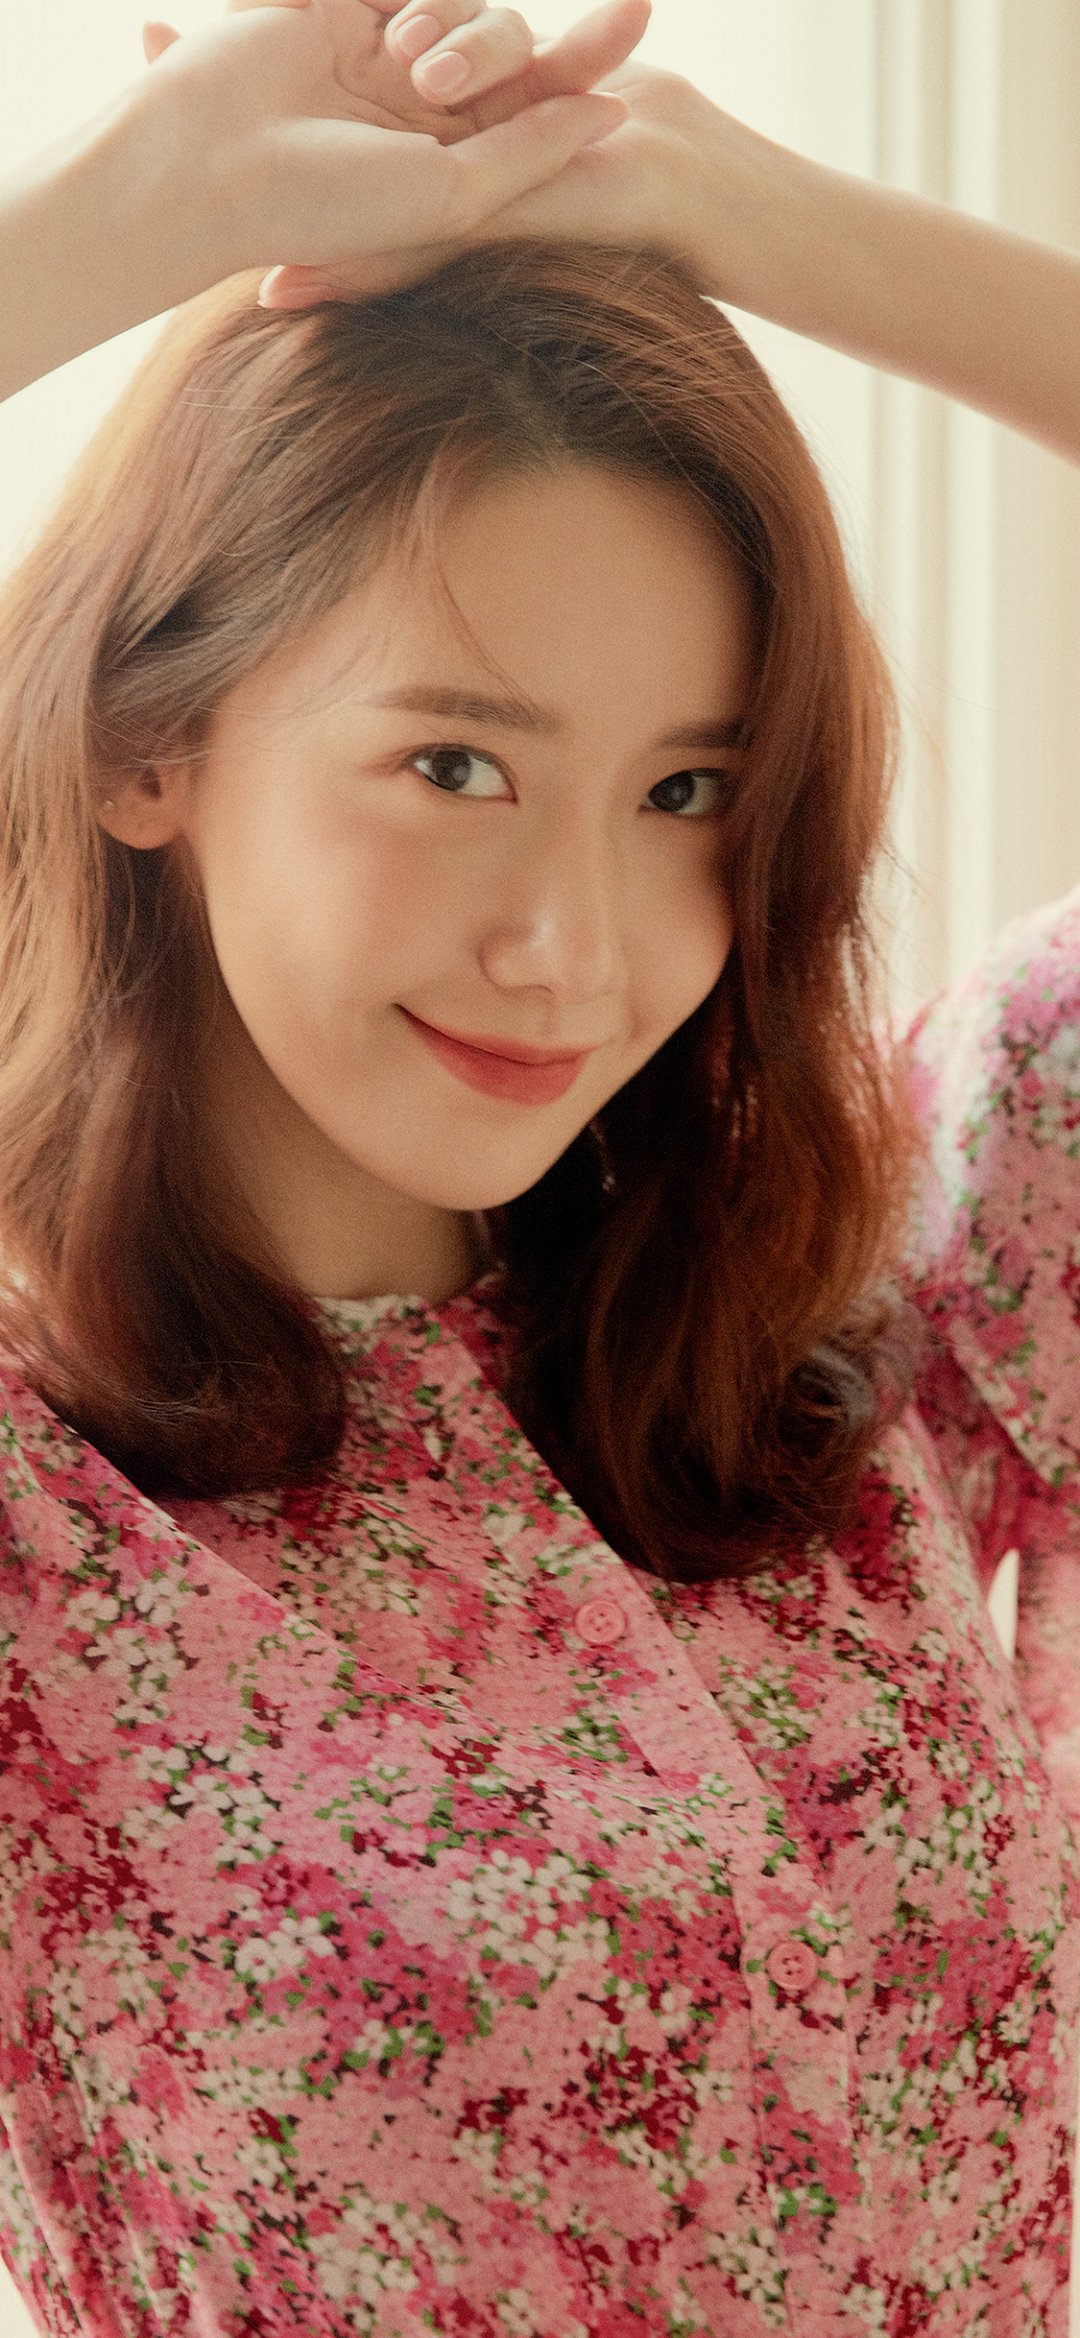 穿粉红花衬衫的韩国明星林允儿,高清图片,手机壁纸